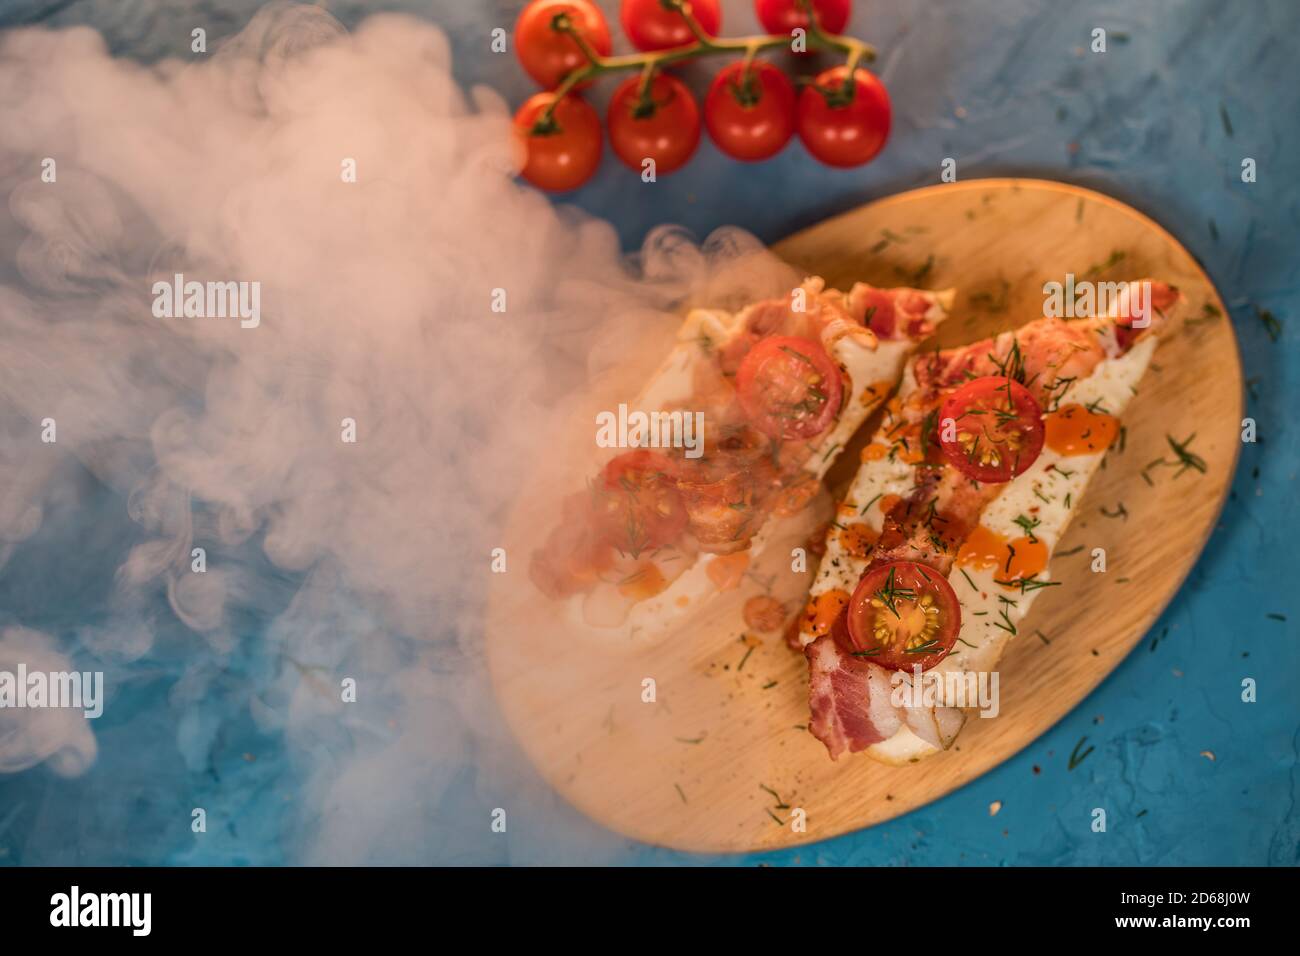 Stillleben von appetitlichen Bruschetts auf Holzbrett mit Dampf. Nahaufnahme von Sandwiches mit geschmolzenem Käse, Speck, Kirschtomaten, Dill und Sauce auf Stockfoto